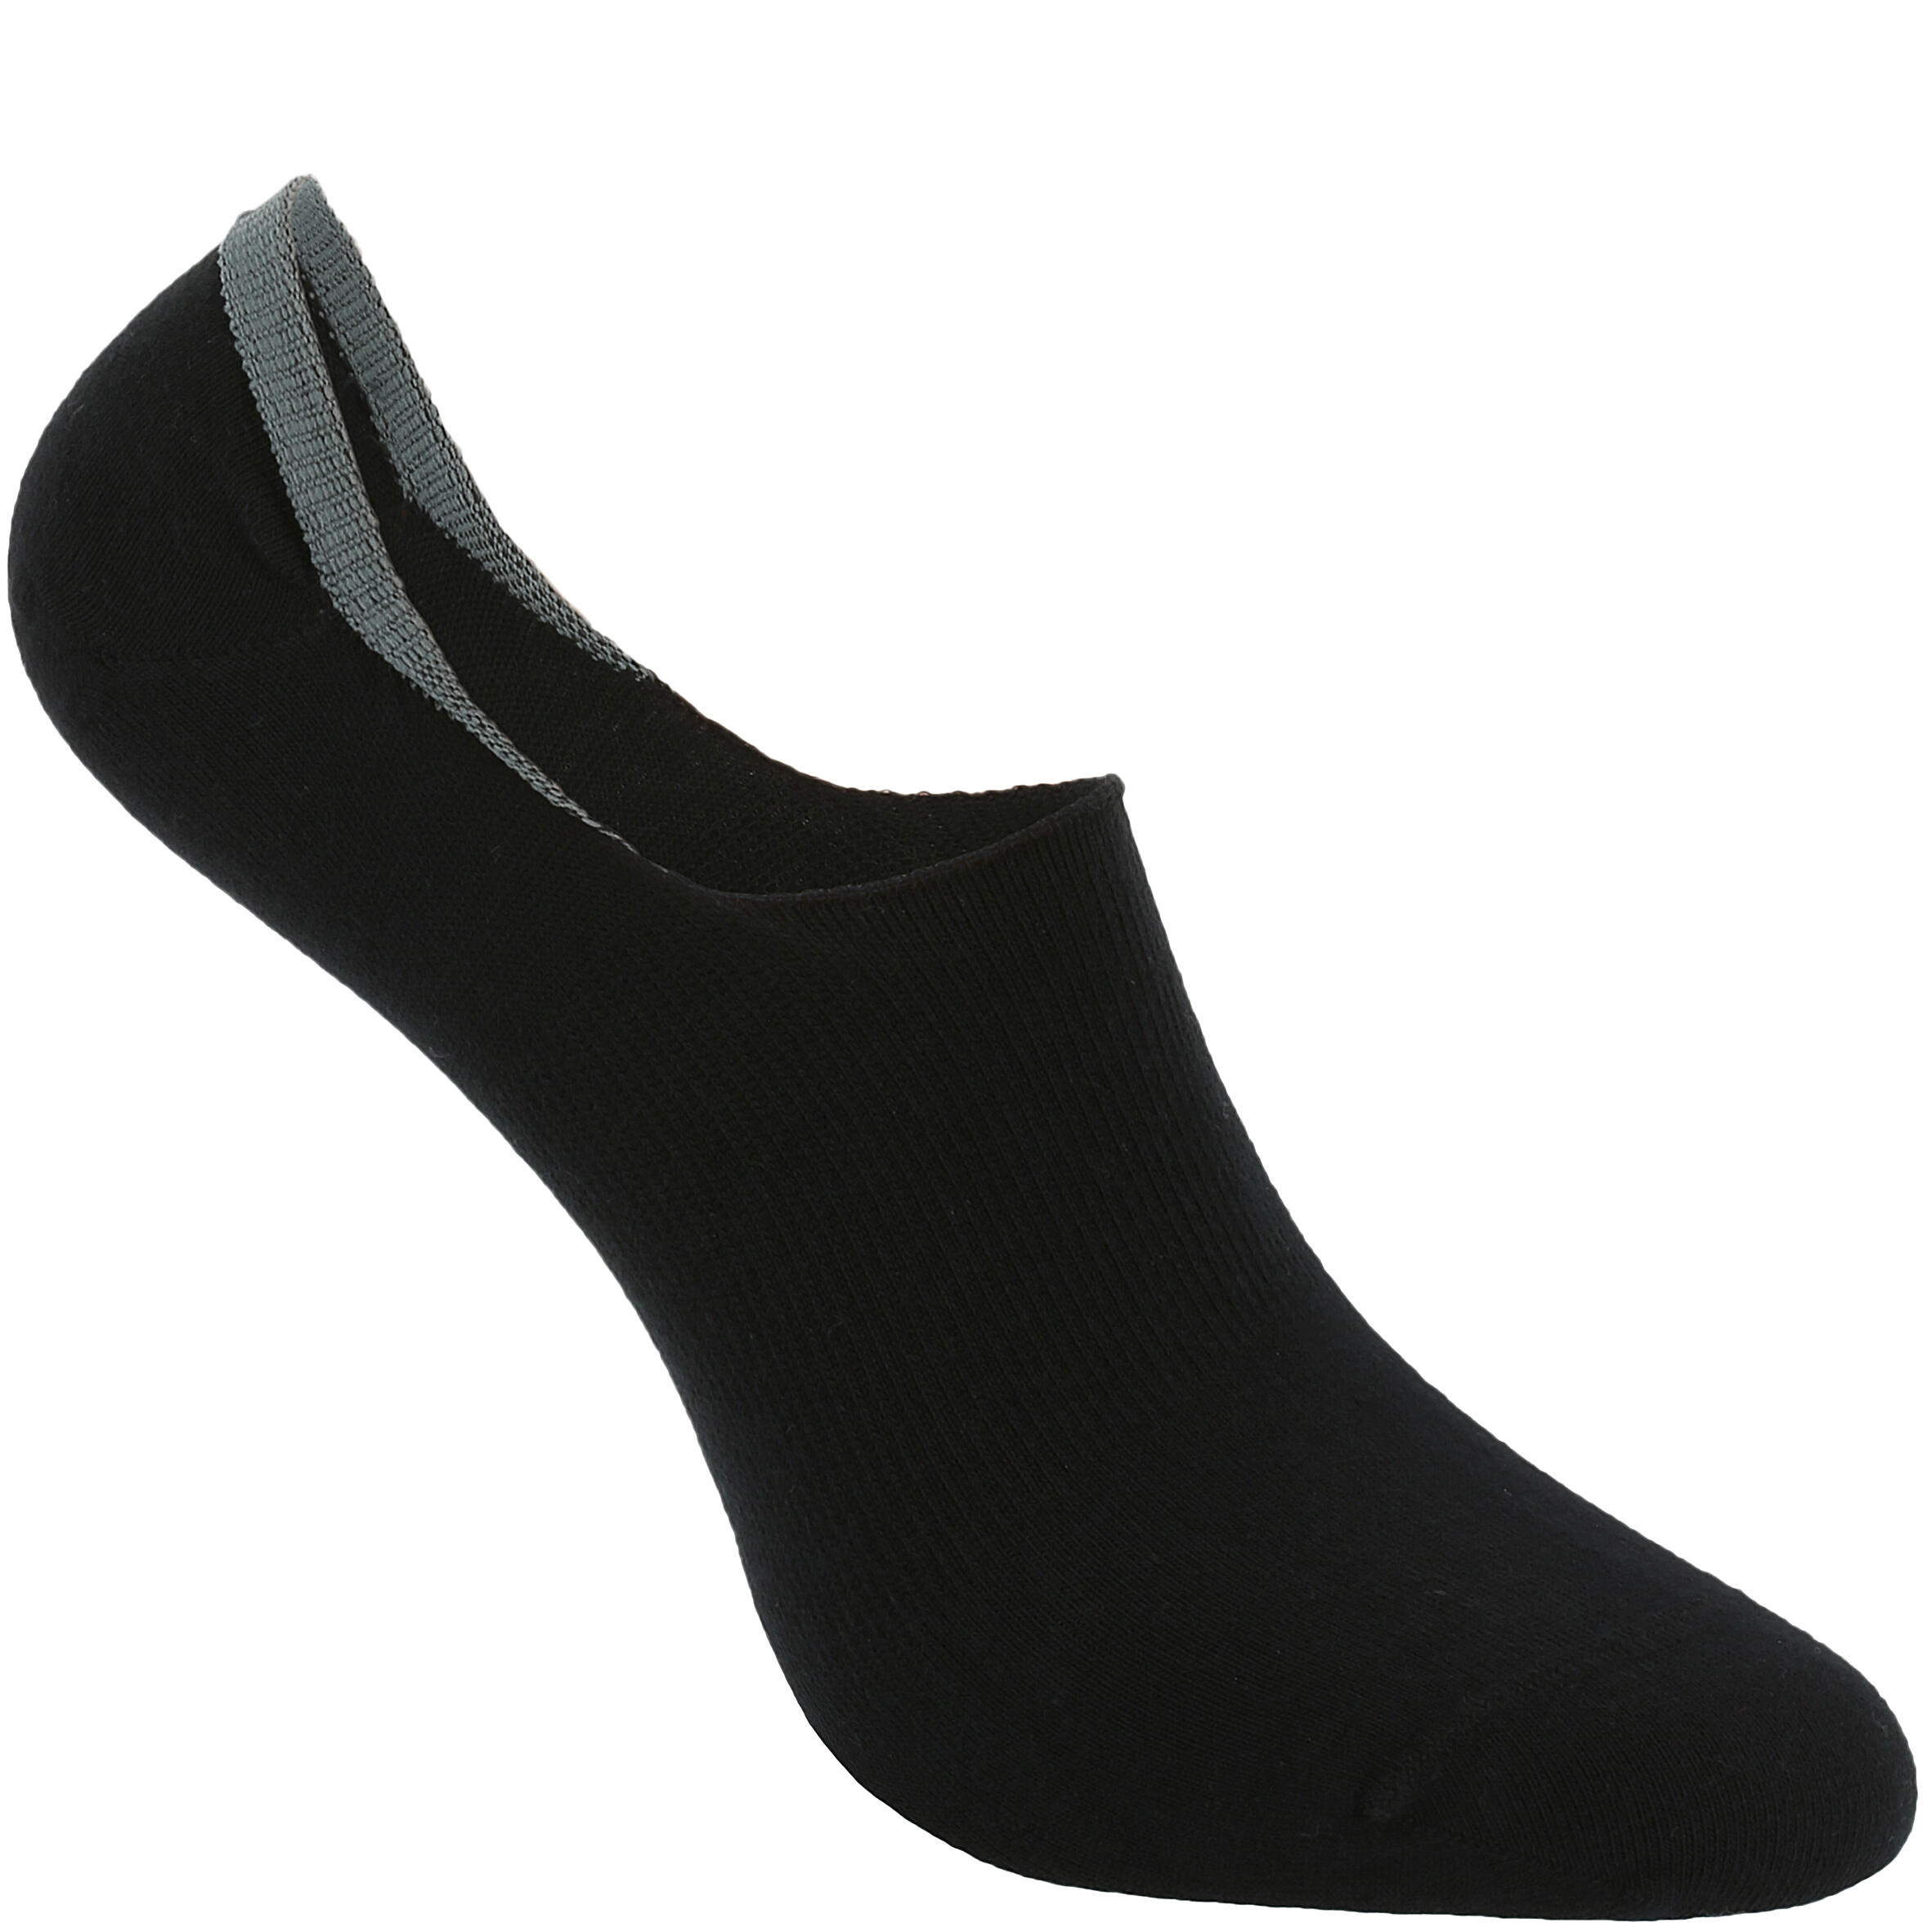 NEWFEEL Invisible 500 Women's Fitness Walking Socks - Black